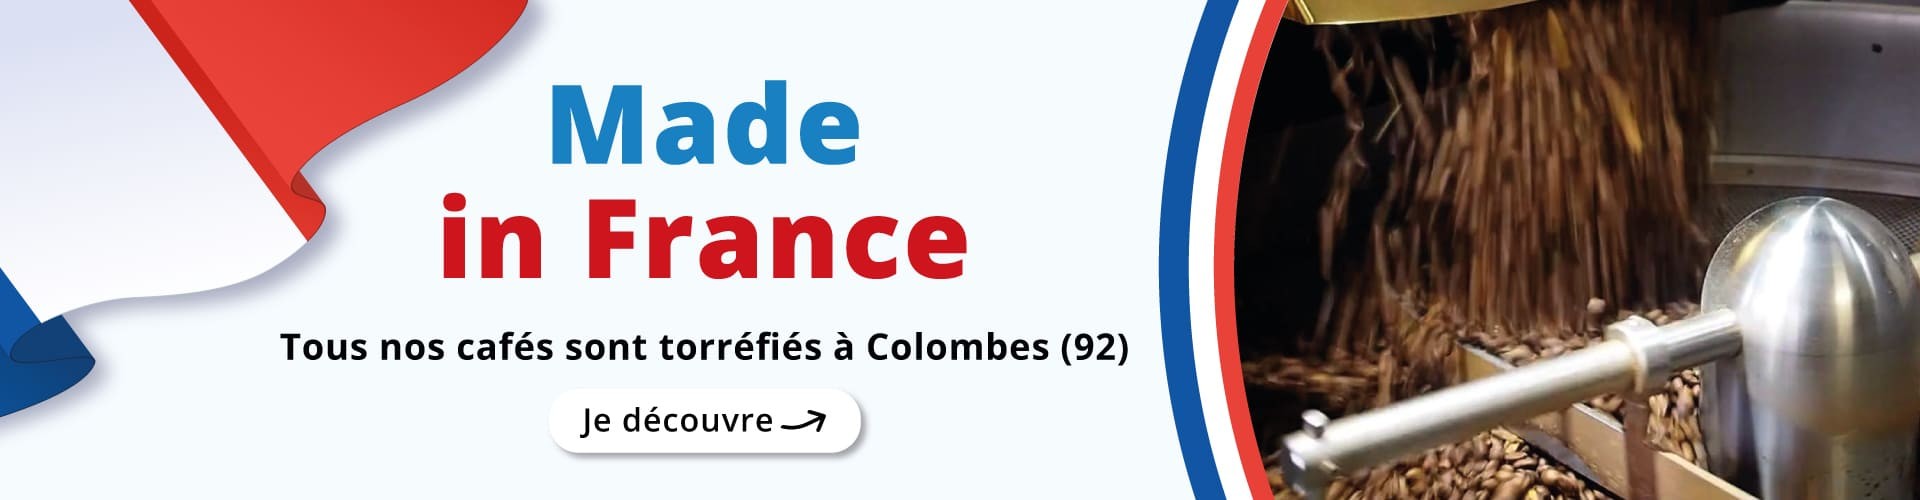 Made in France - Tous nos cafés sont torréfiés à Colombes (92)